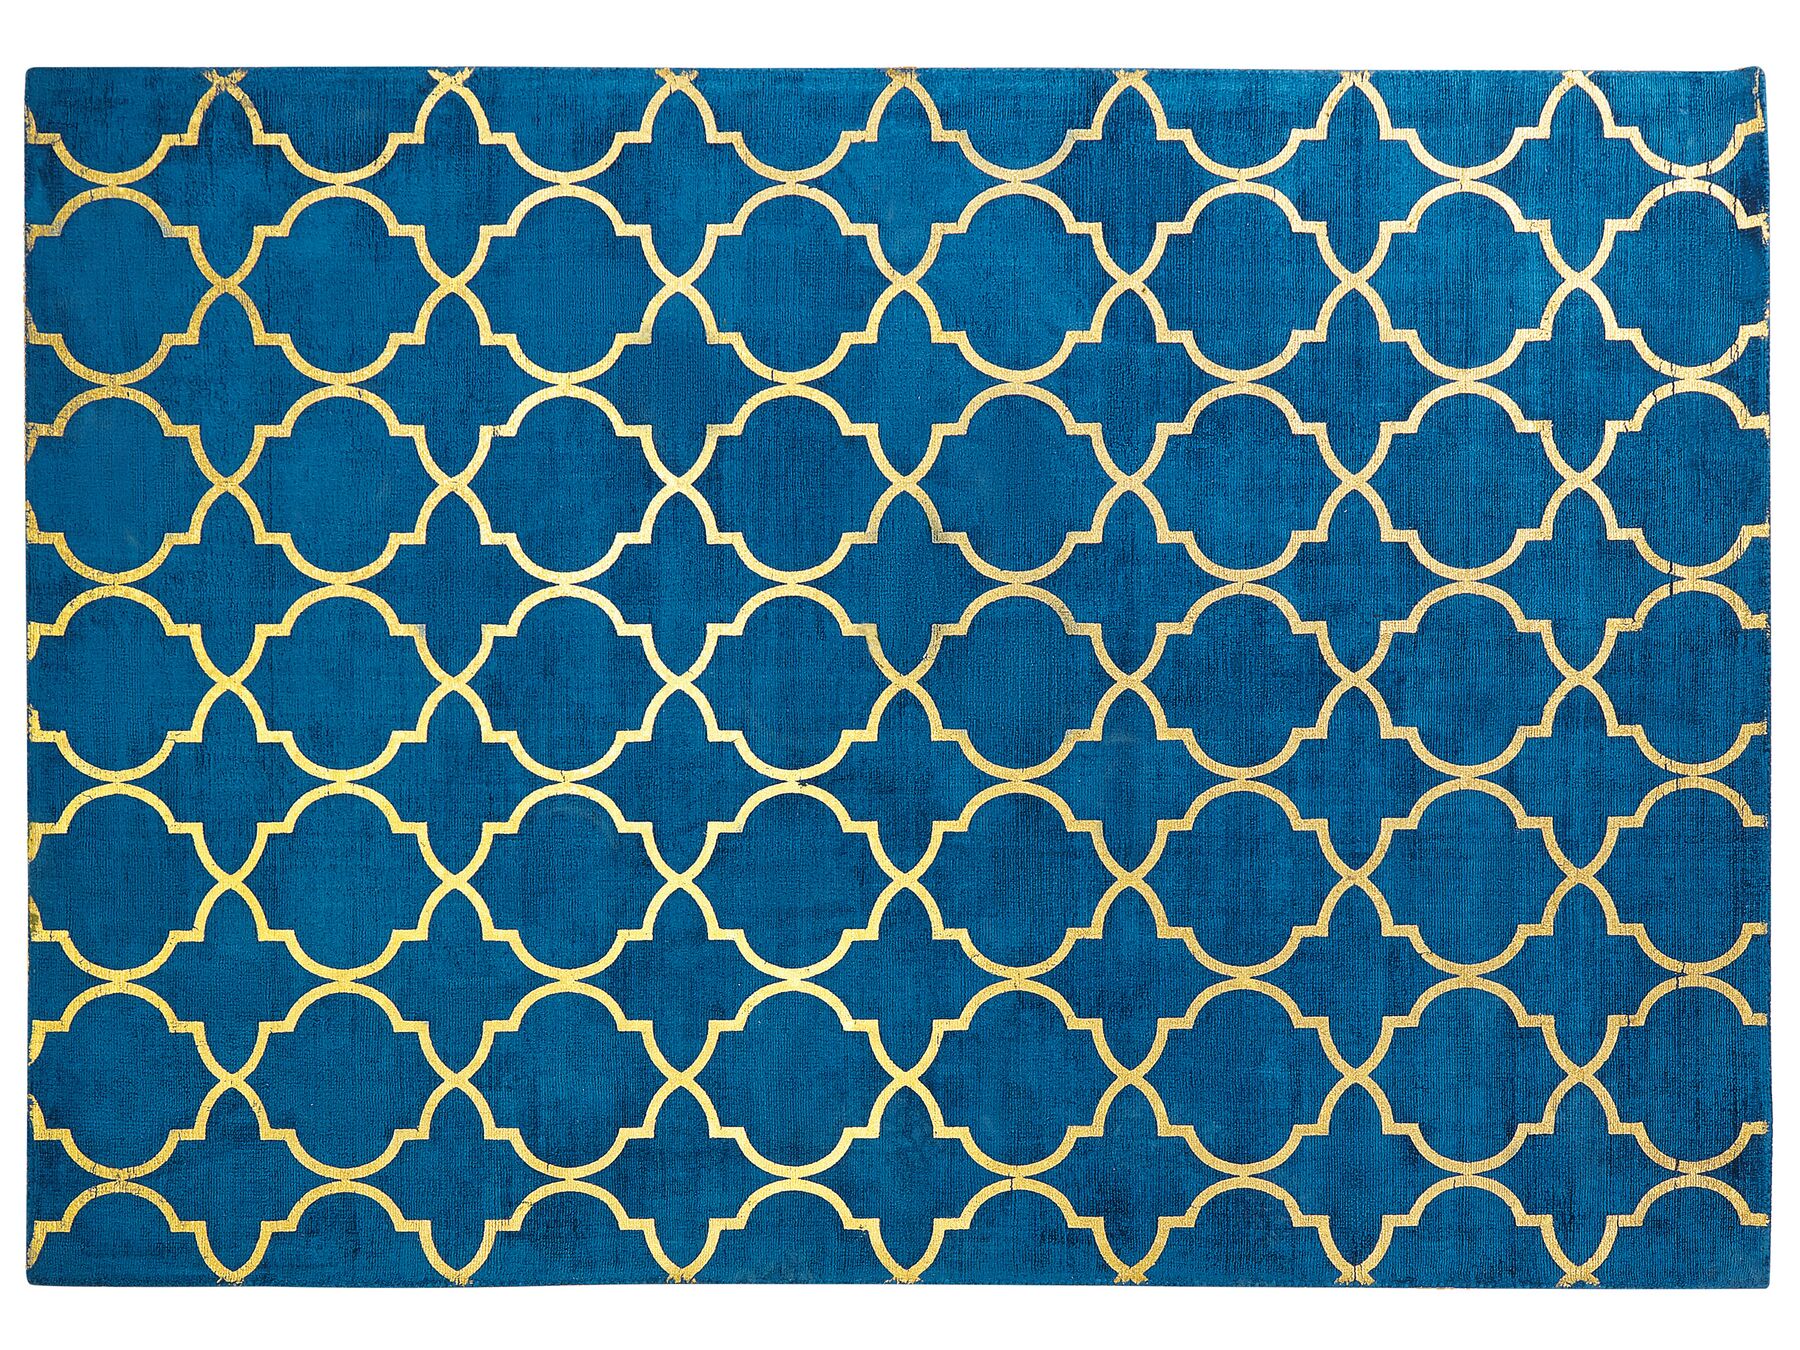 Tappeto viscosa blu marino e oro 160 x 230 cm YELKI_762687